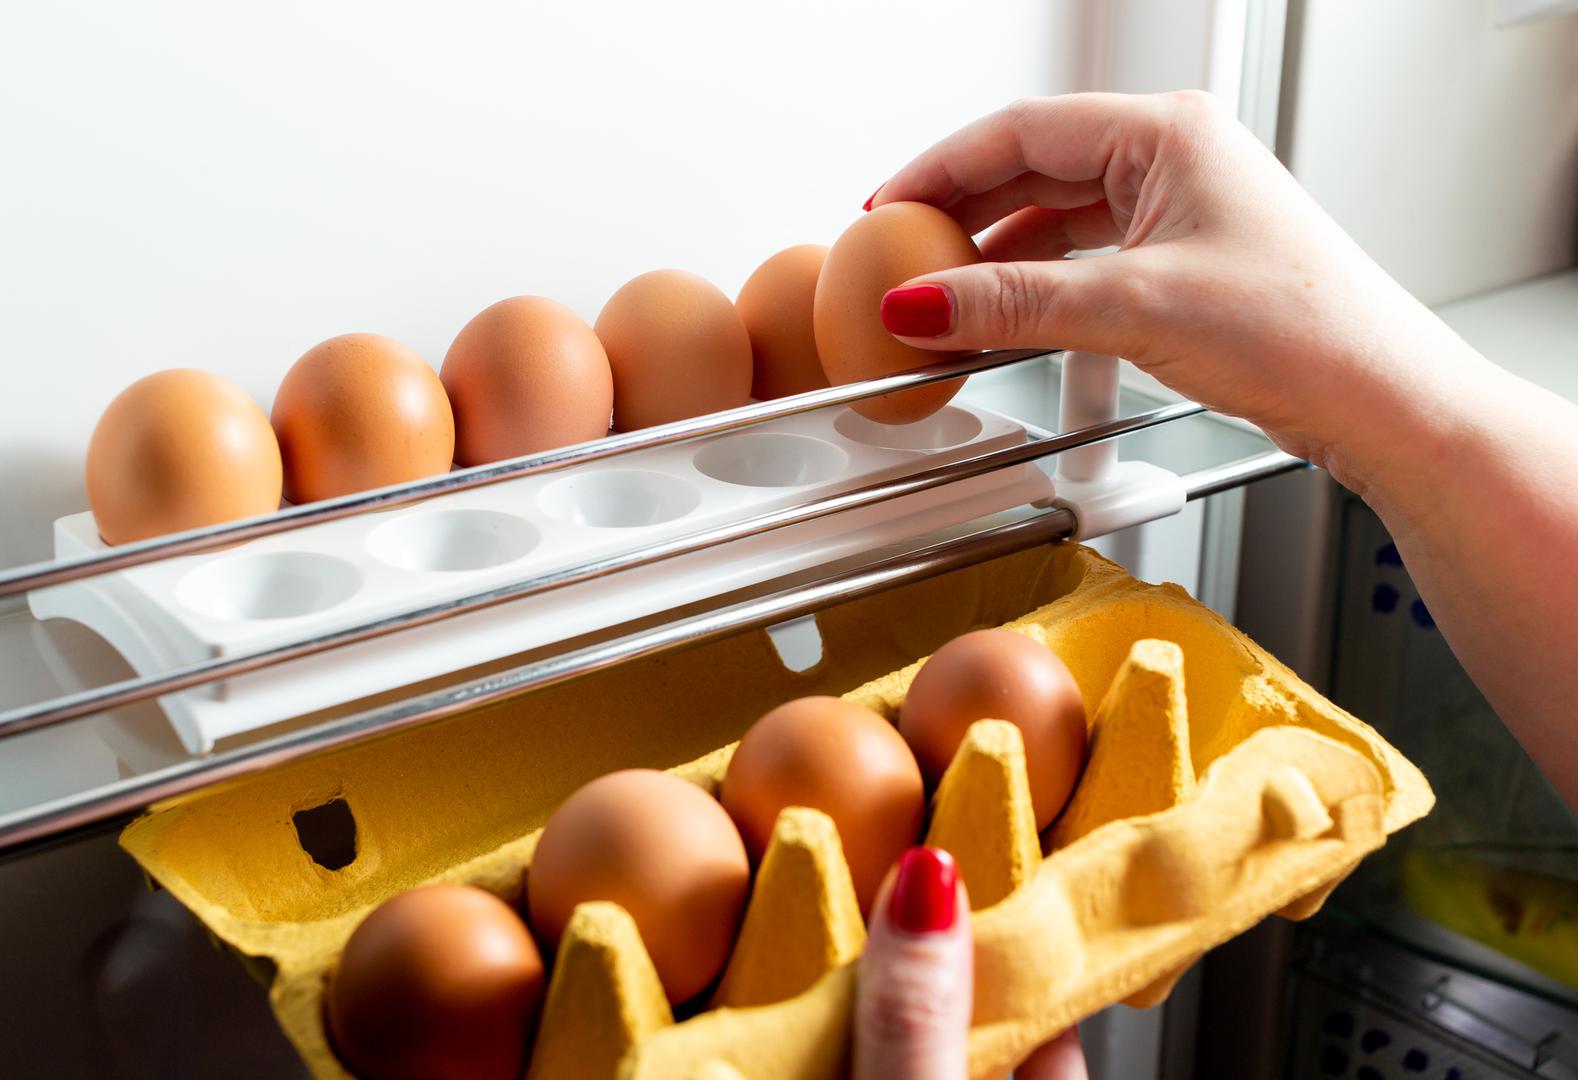 ‘Ako vam je teško kontrolirati svoju glad, uvijek biste trebali držati malo tvrdo kuhanih jaja u hladnjaku’, preporučuje Hall, ‘Svaki put kad ogladnite, a nije vrijeme za obrok, samo uzmite jaje ili dva i pojedite bjelanjke. Bjelanjci jedva da imaju kalorija, ali će vas zasititi’. Prema Ministarstvu poljoprivrede SAD-a, tvrdo kuhana jaja mogu se držati u hladnjaku do sedam dana, pod uvjetom da se ne ostavljaju na sobnoj temperaturi dulje od dva sata.